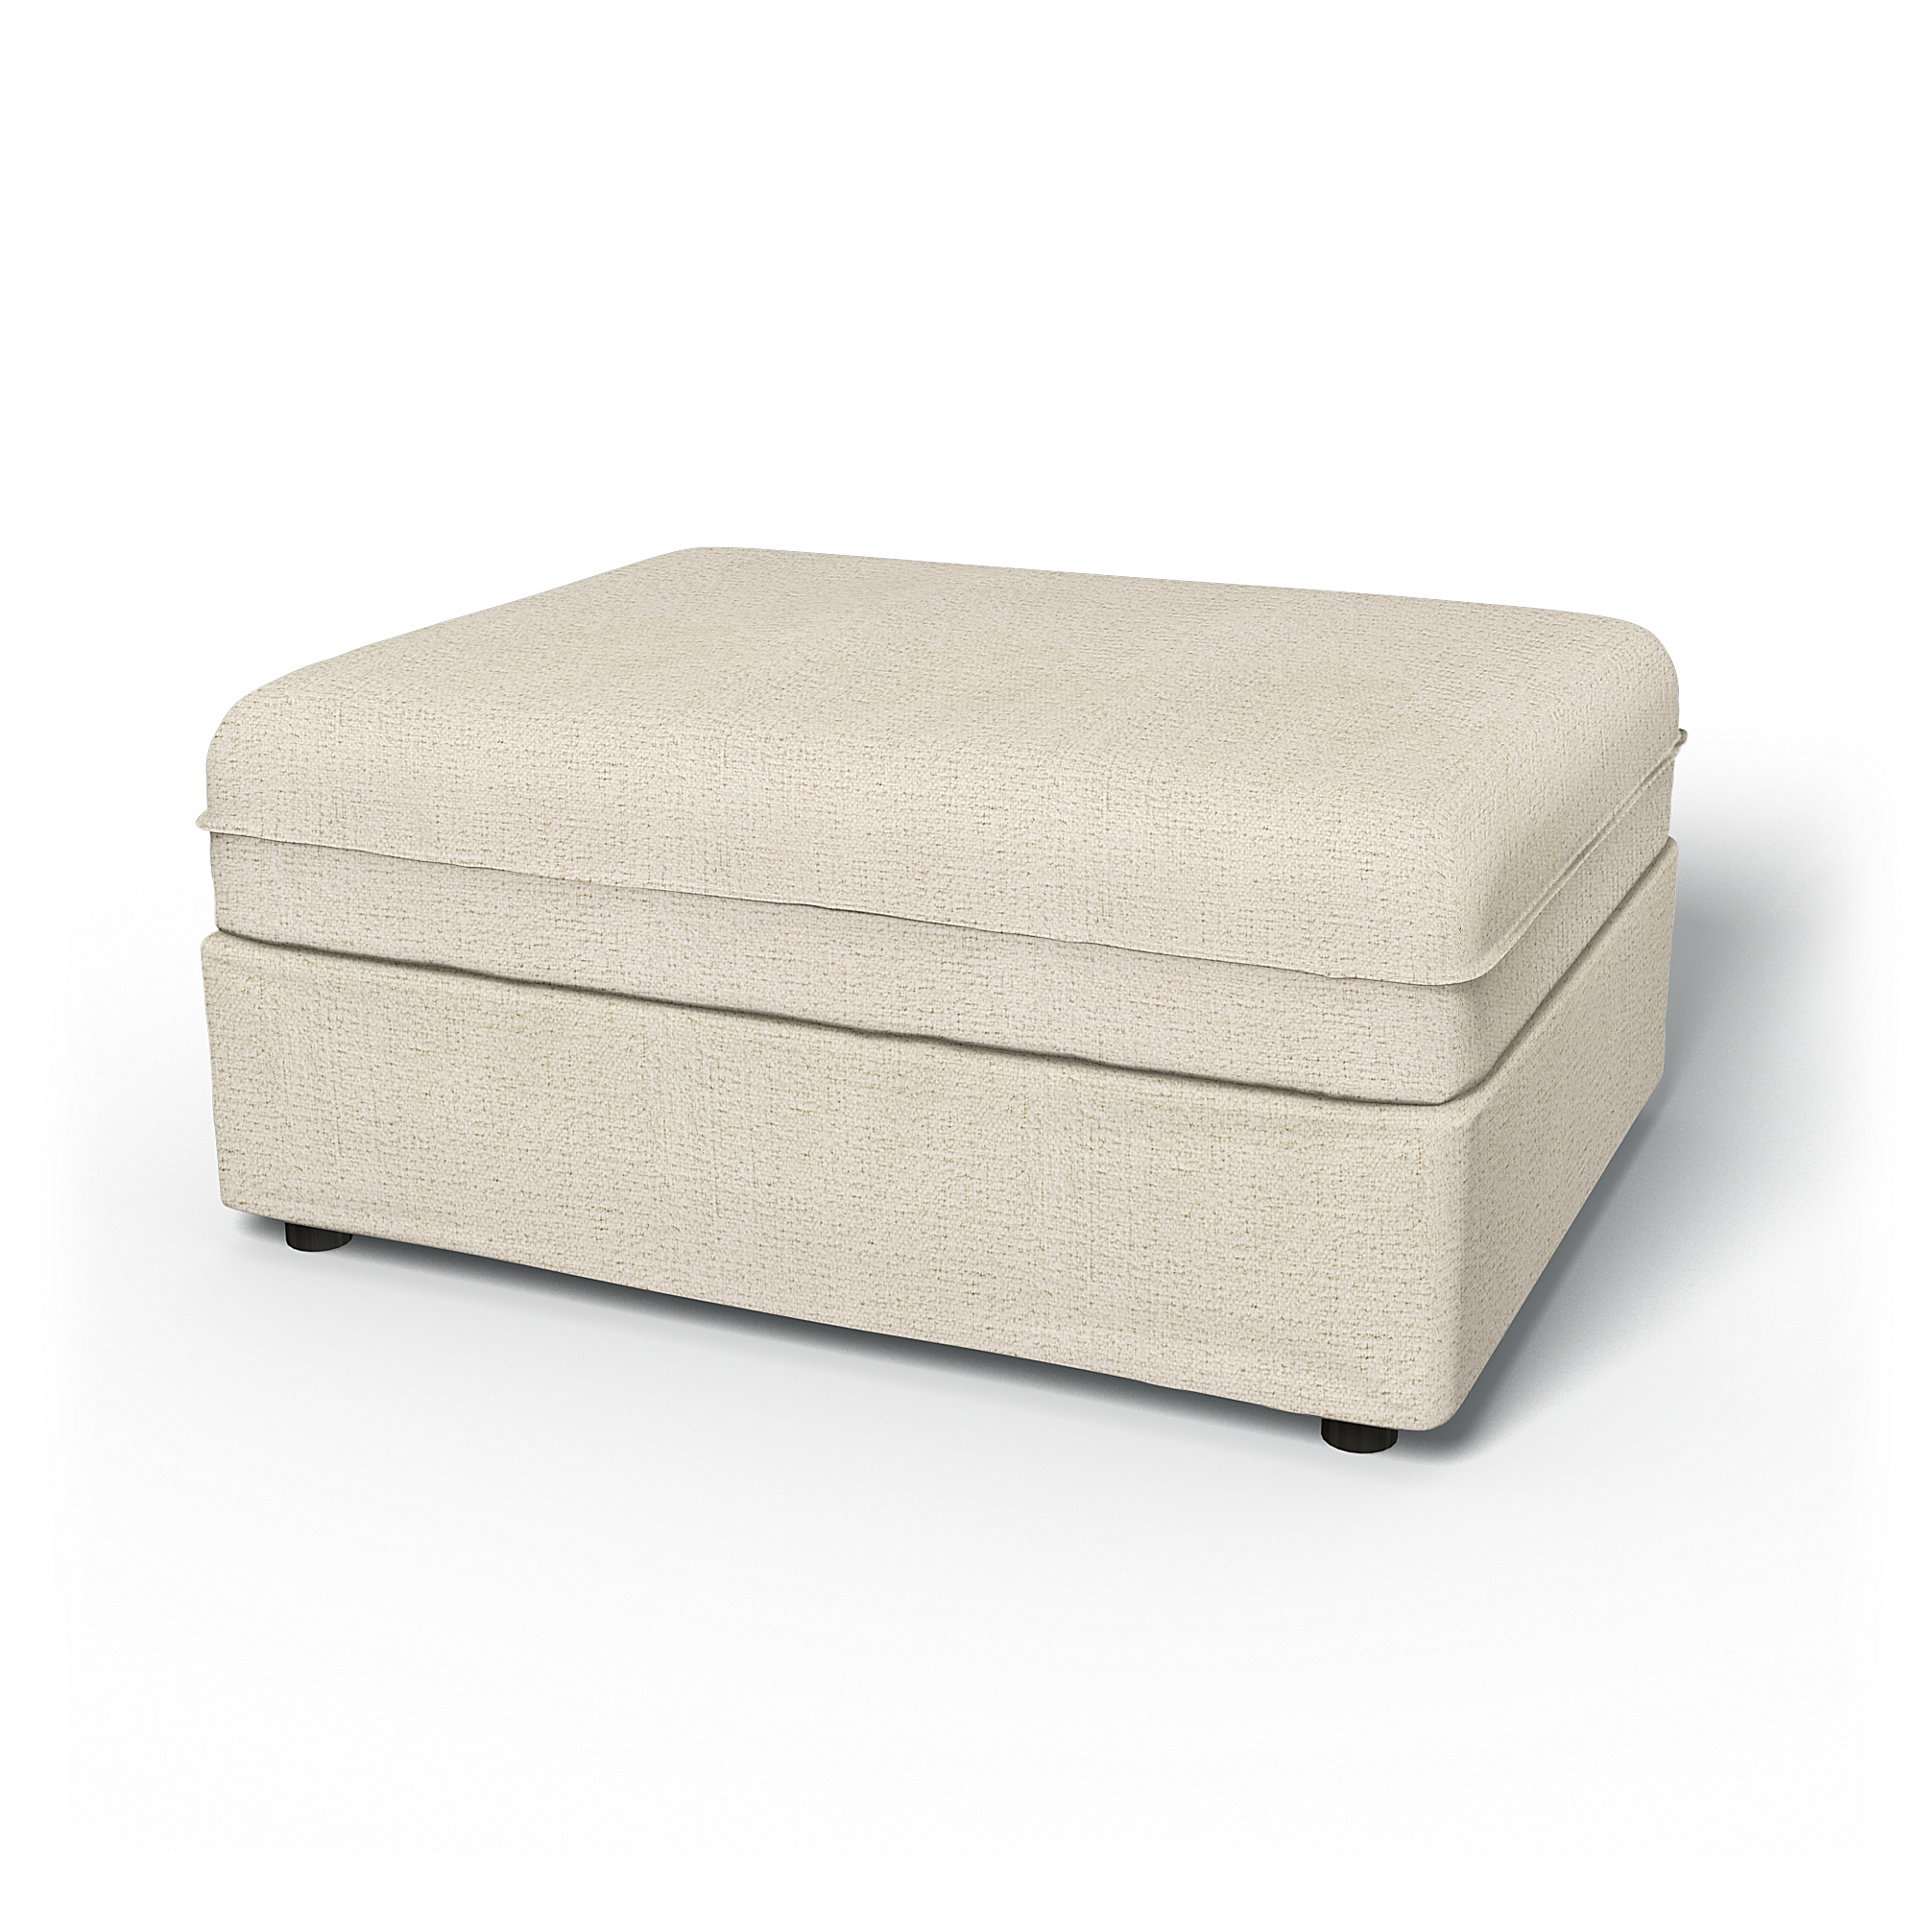 IKEA - Vallentuna Seat Module Cover 100x80cm 39x32in, Ecru, Boucle & Texture - Bemz